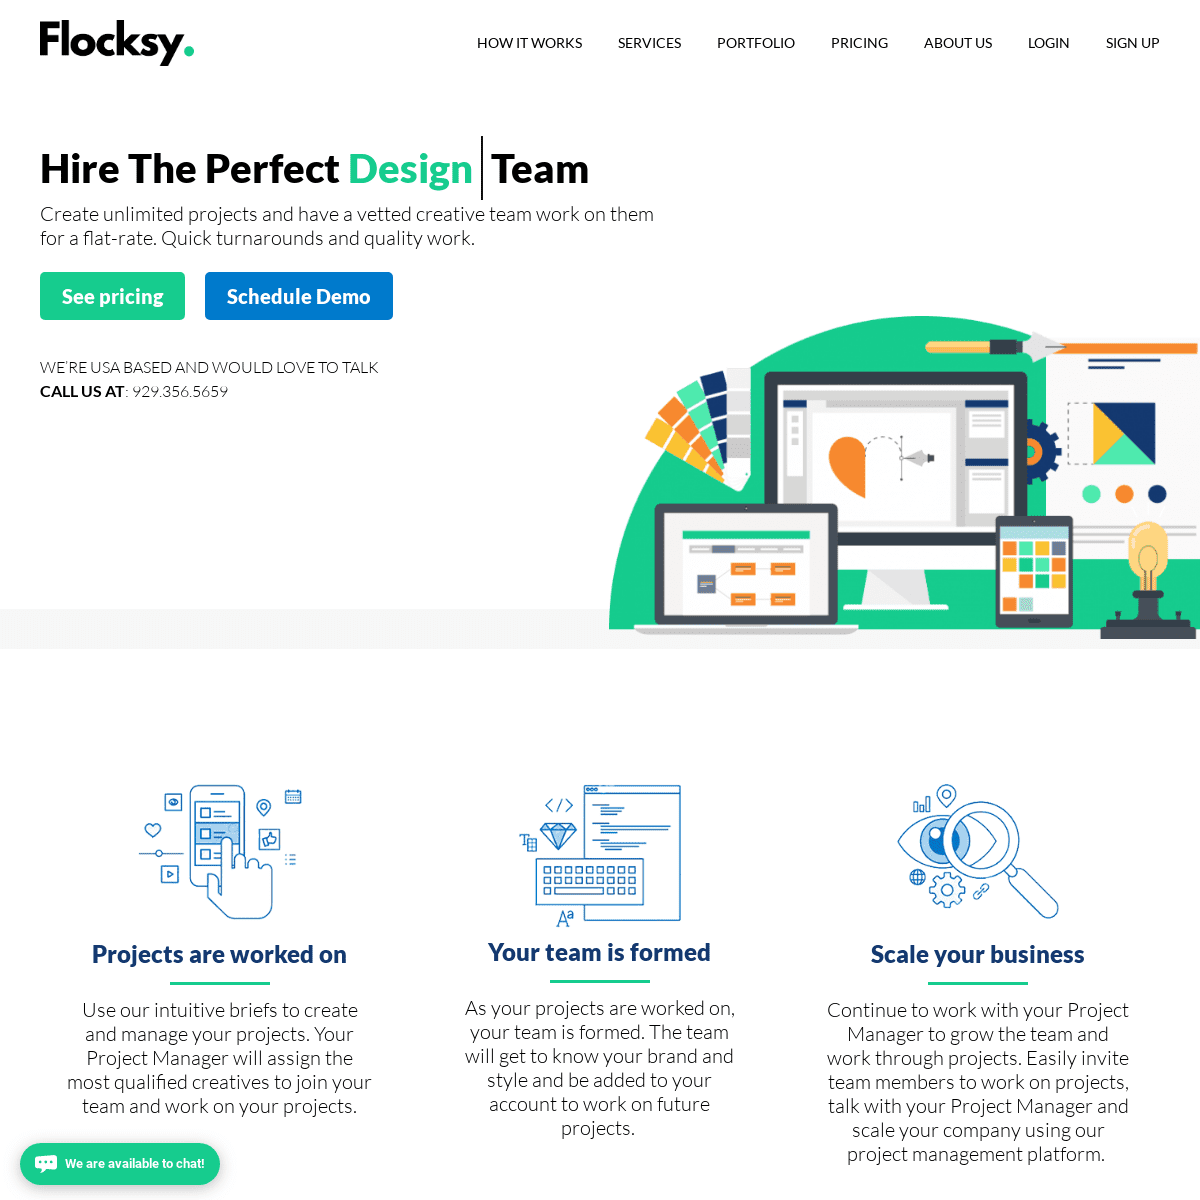 A complete backup of flocksy.com